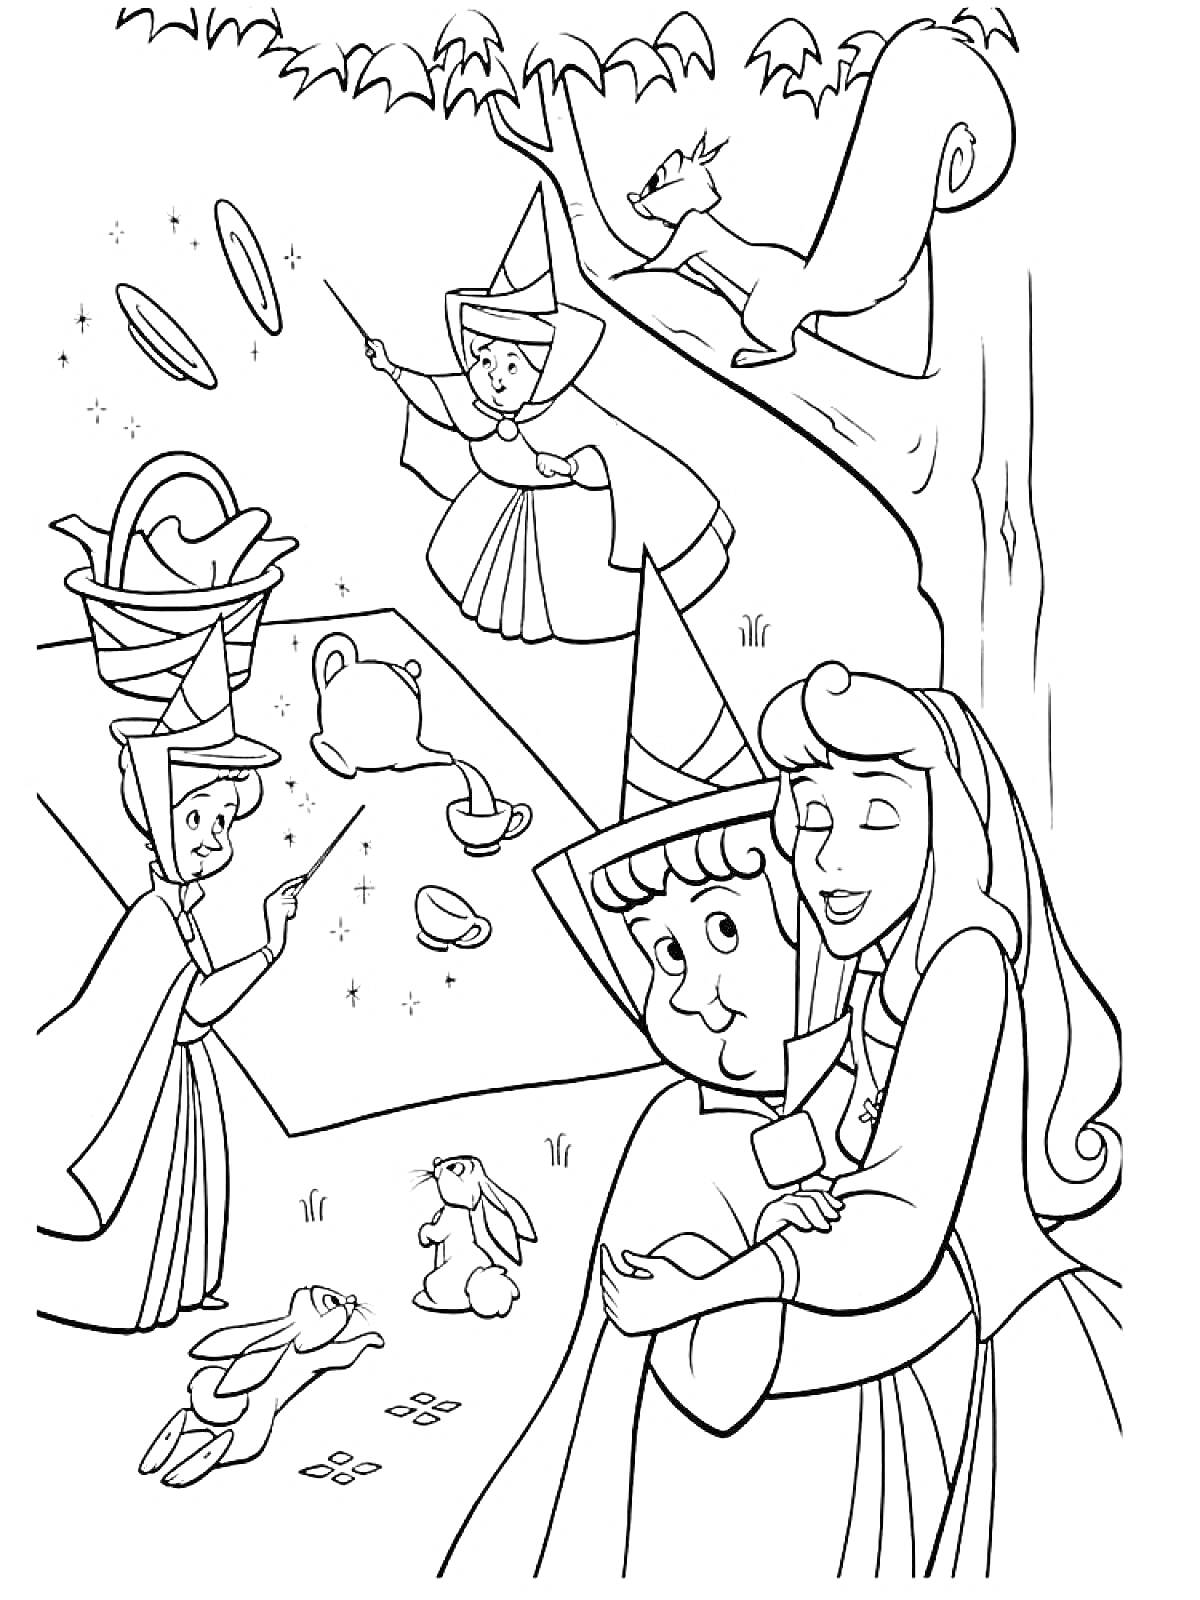 Принцесса и волшебницы в лесу: объятия, магия, пикник и белка